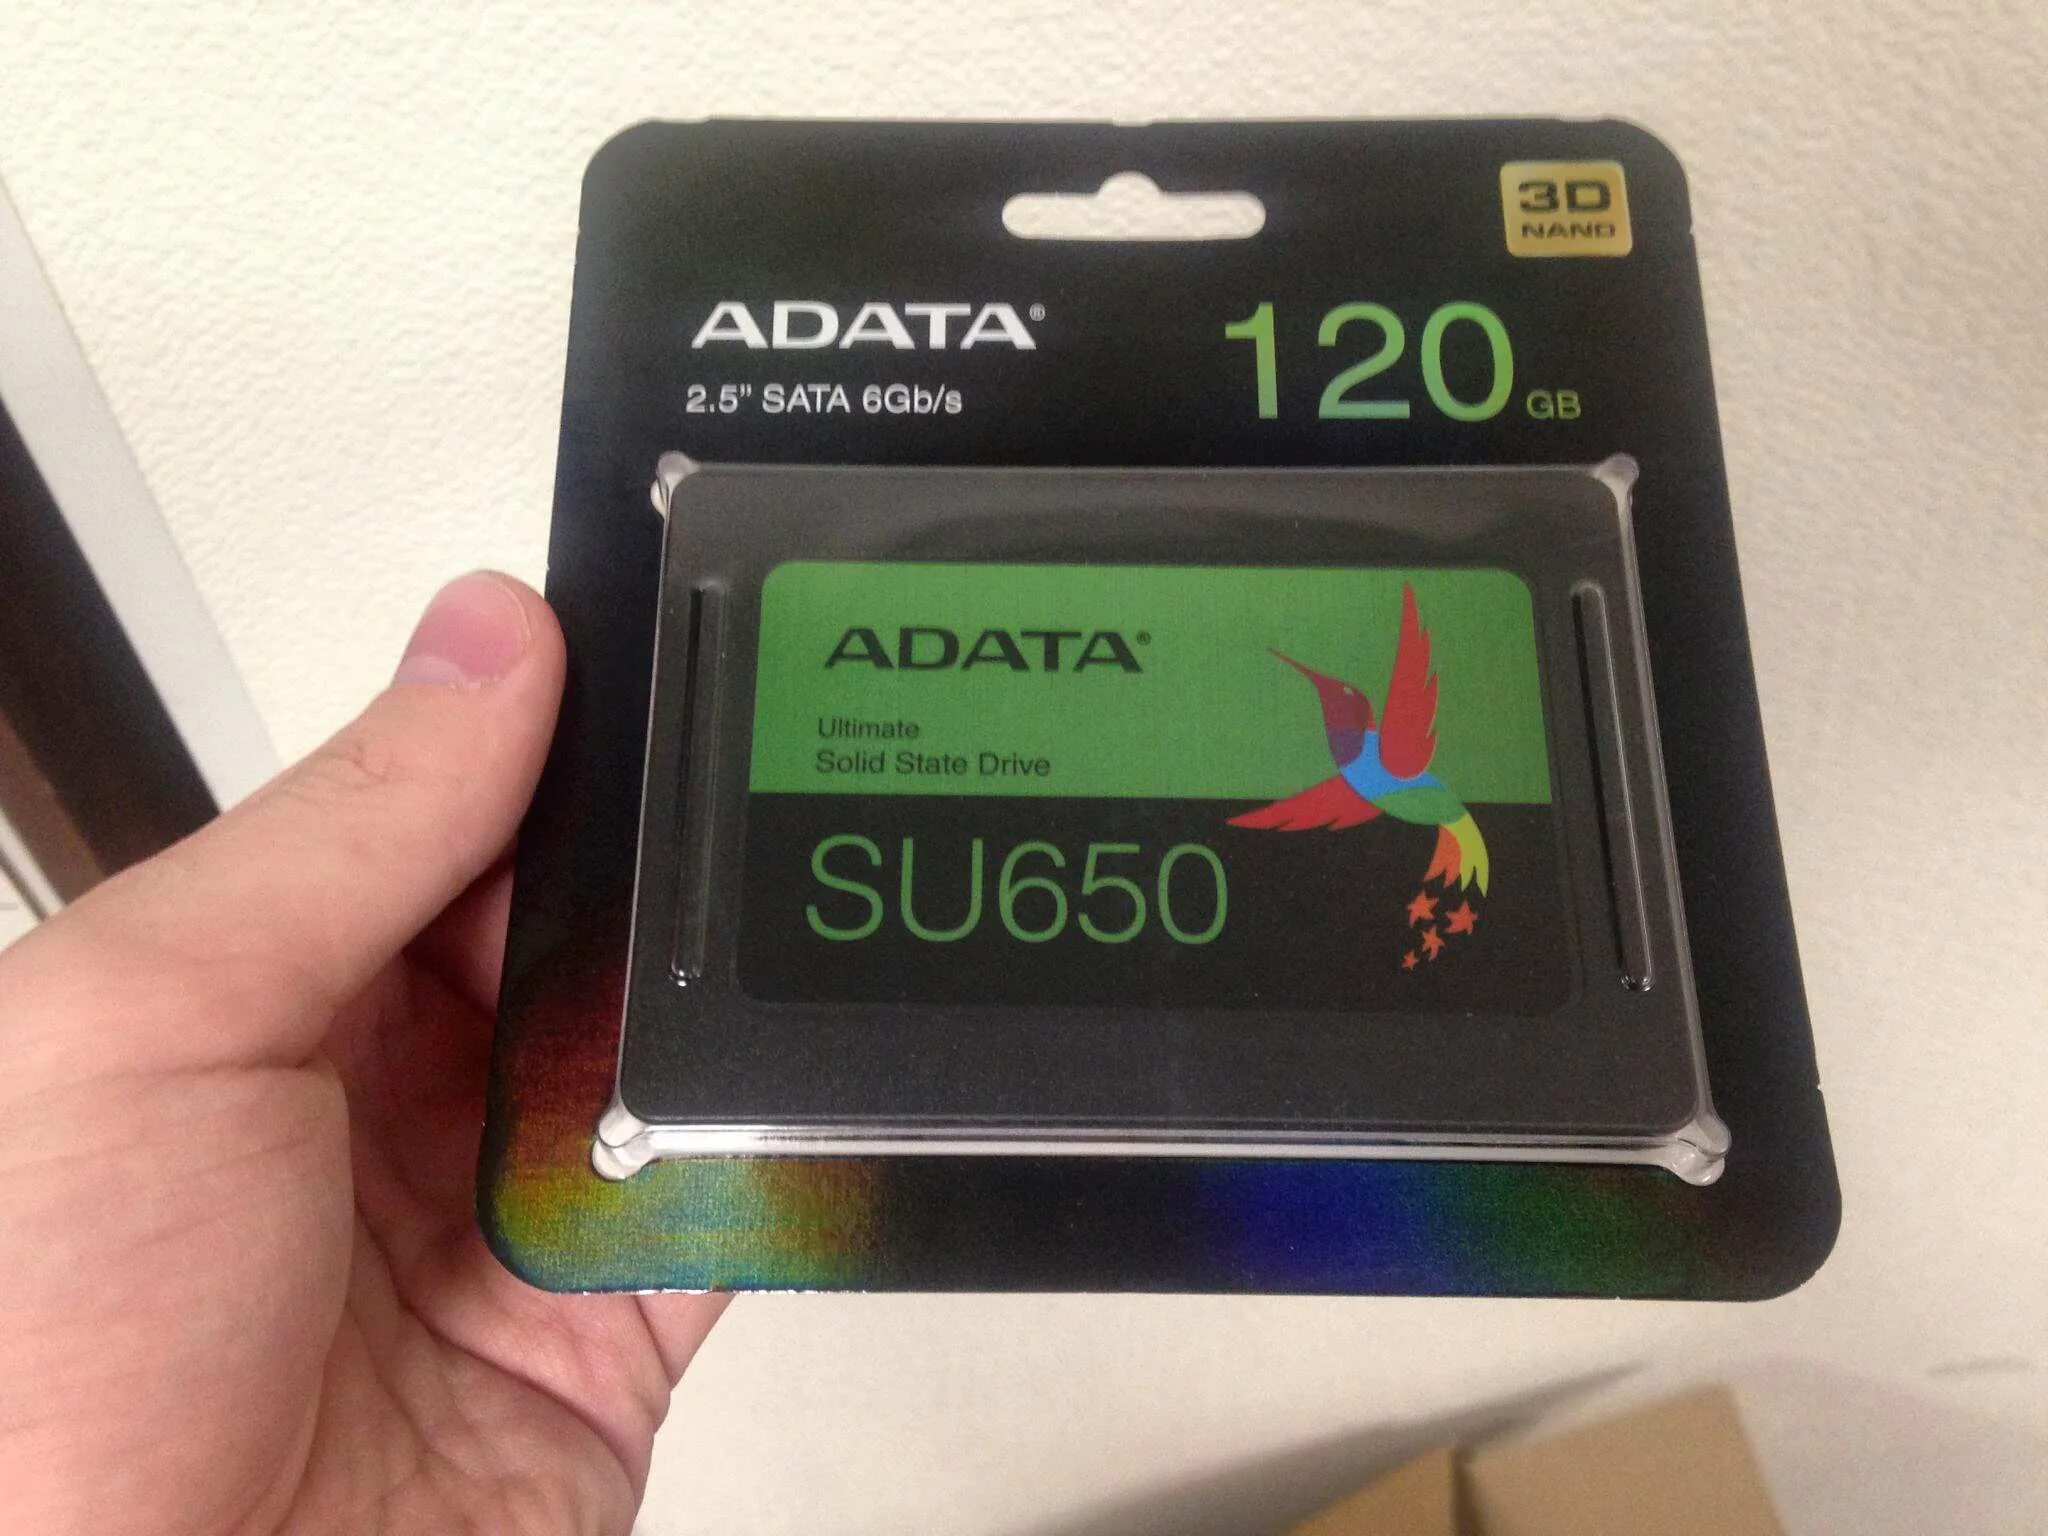 SSD A data 120gb. Накопитель SSD A-data SATA III 120gb. Ссд АДАТА 120 ГБ. SSD A data su650 120gb. 650 su